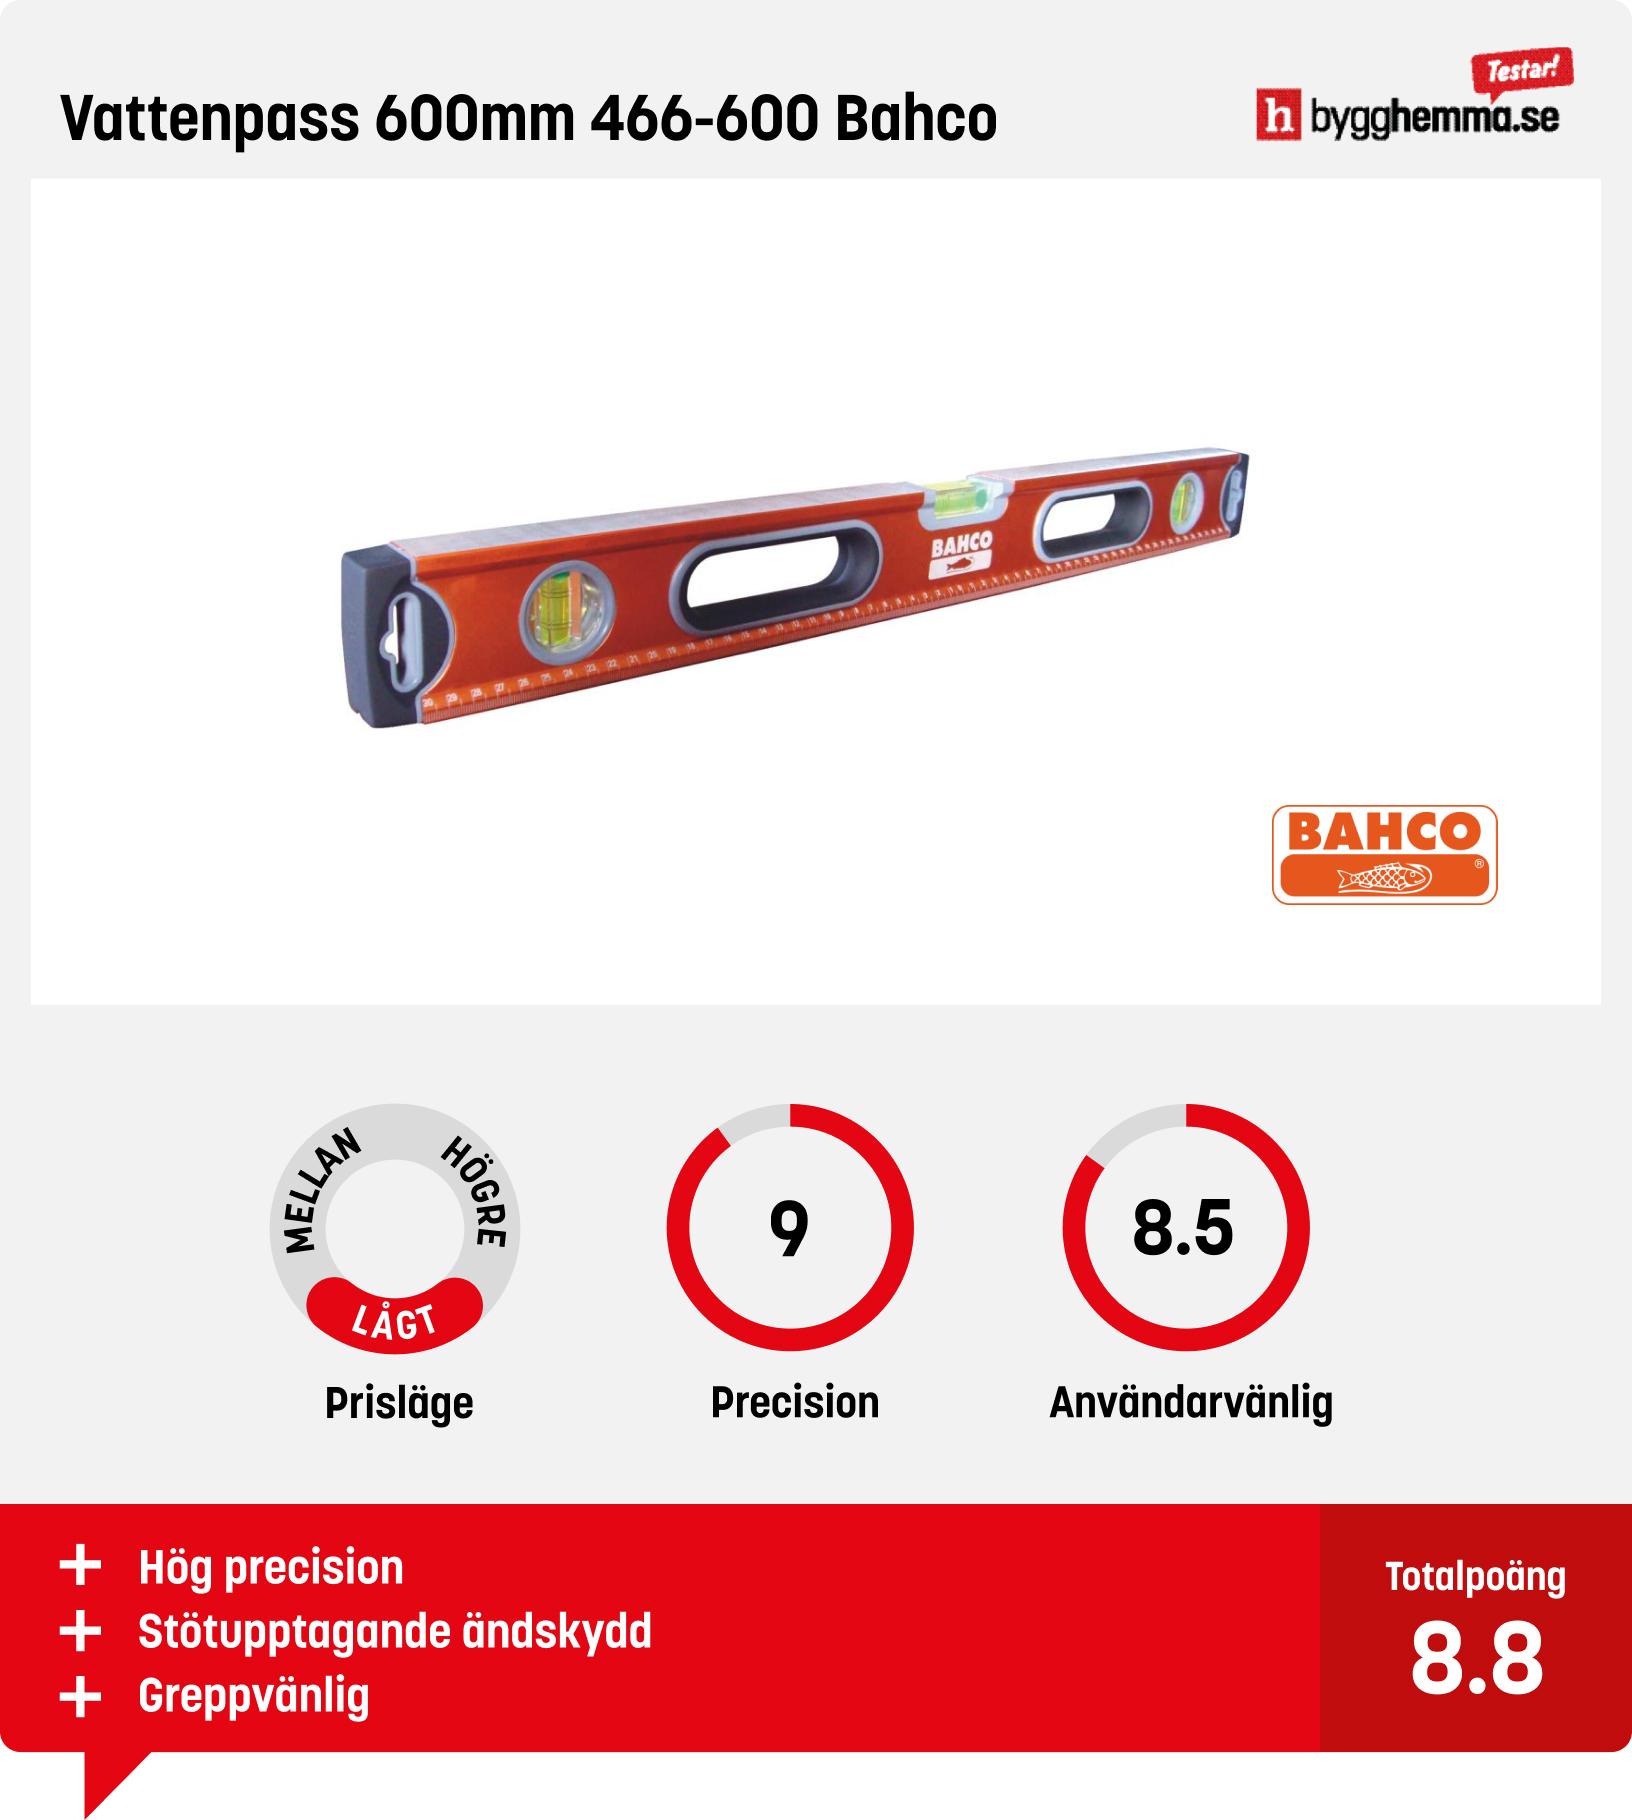 Vattenpass bäst i test - Vattenpass 600mm 466-600 Bahco